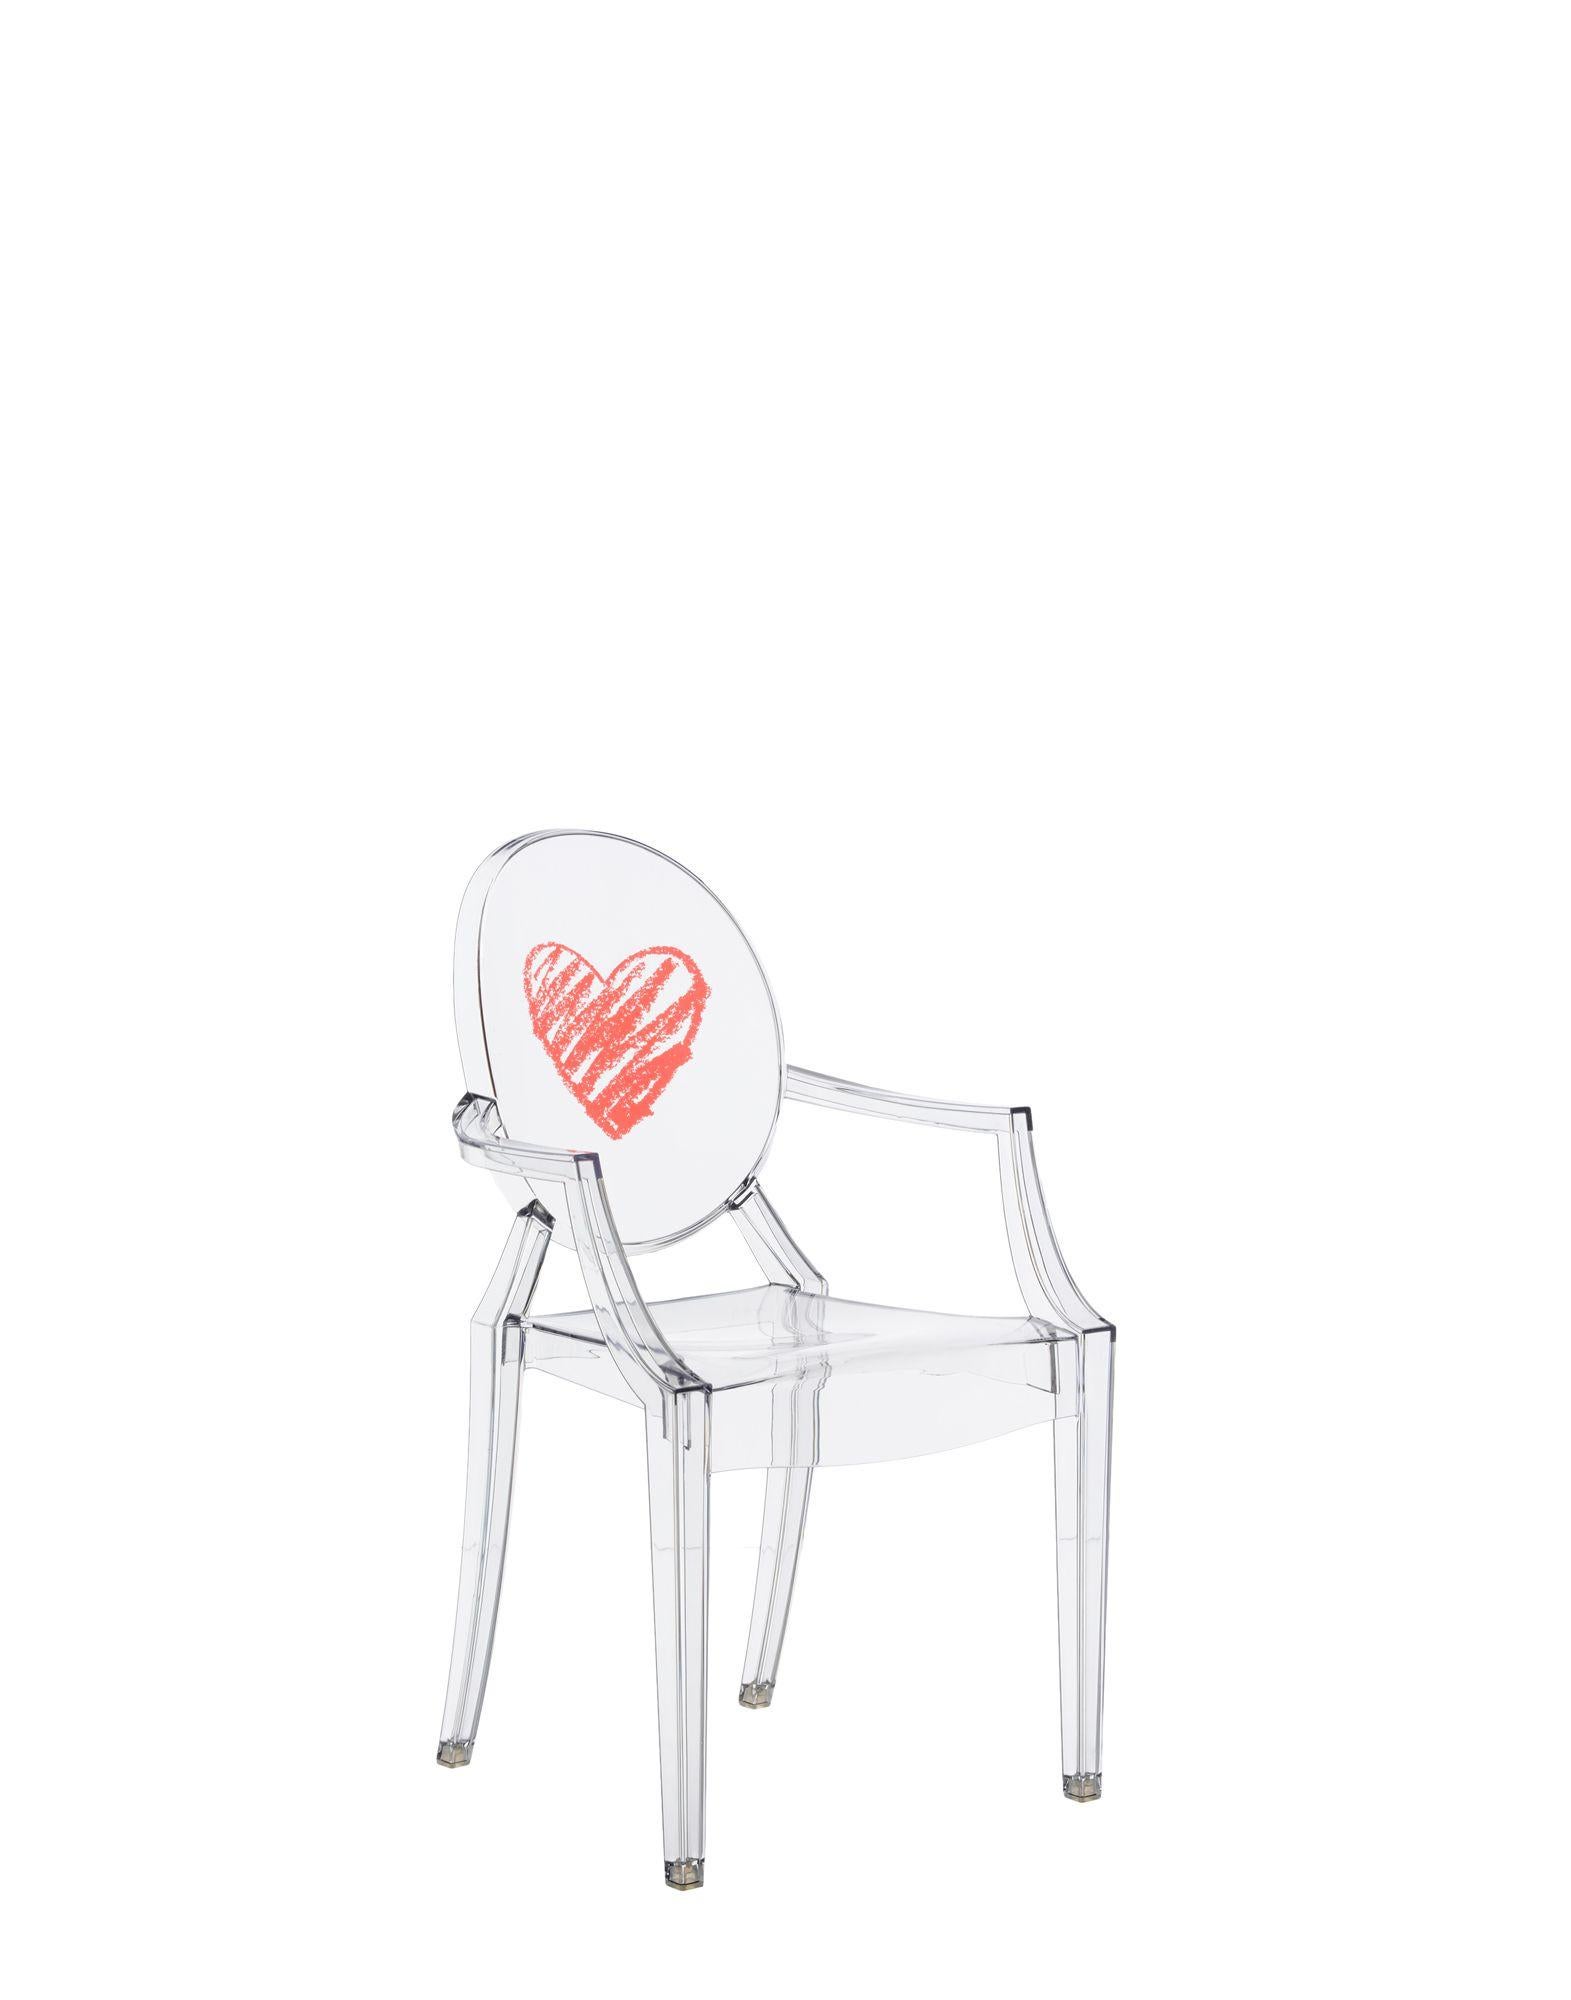 Die Miniaturversion eines der berühmtesten Designstühle ergänzt die Kartell Kids Linie in mehreren neuen Versionen. Der Lou Lou Ghost von Philippe Starck erhält neue, individuell gestaltbare Grafiken für die lustige Welt der Kinder.

Abmessungen: